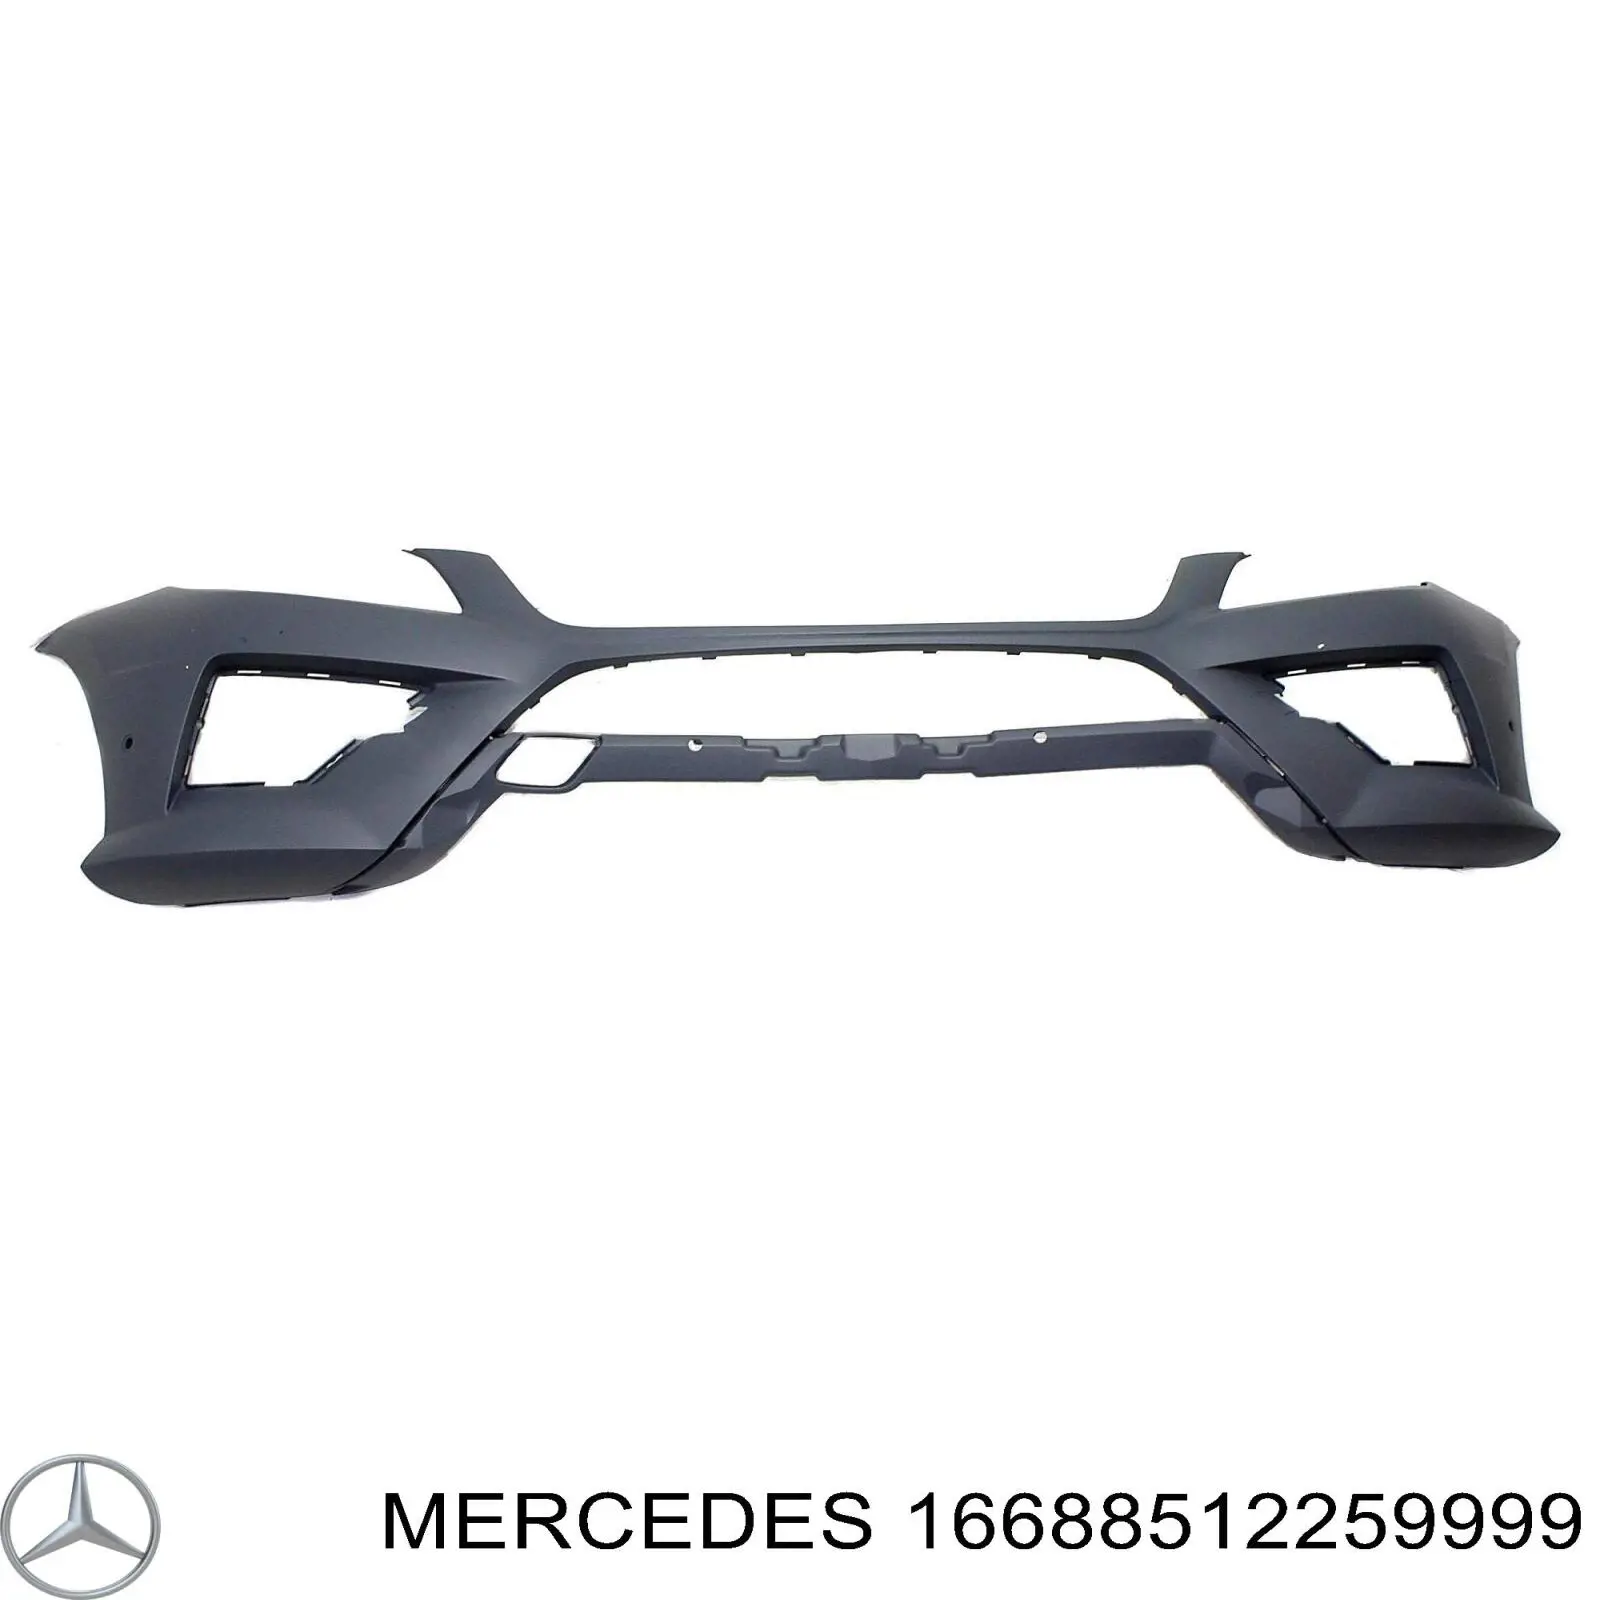  Бампер передній Mercedes ML/GLE 